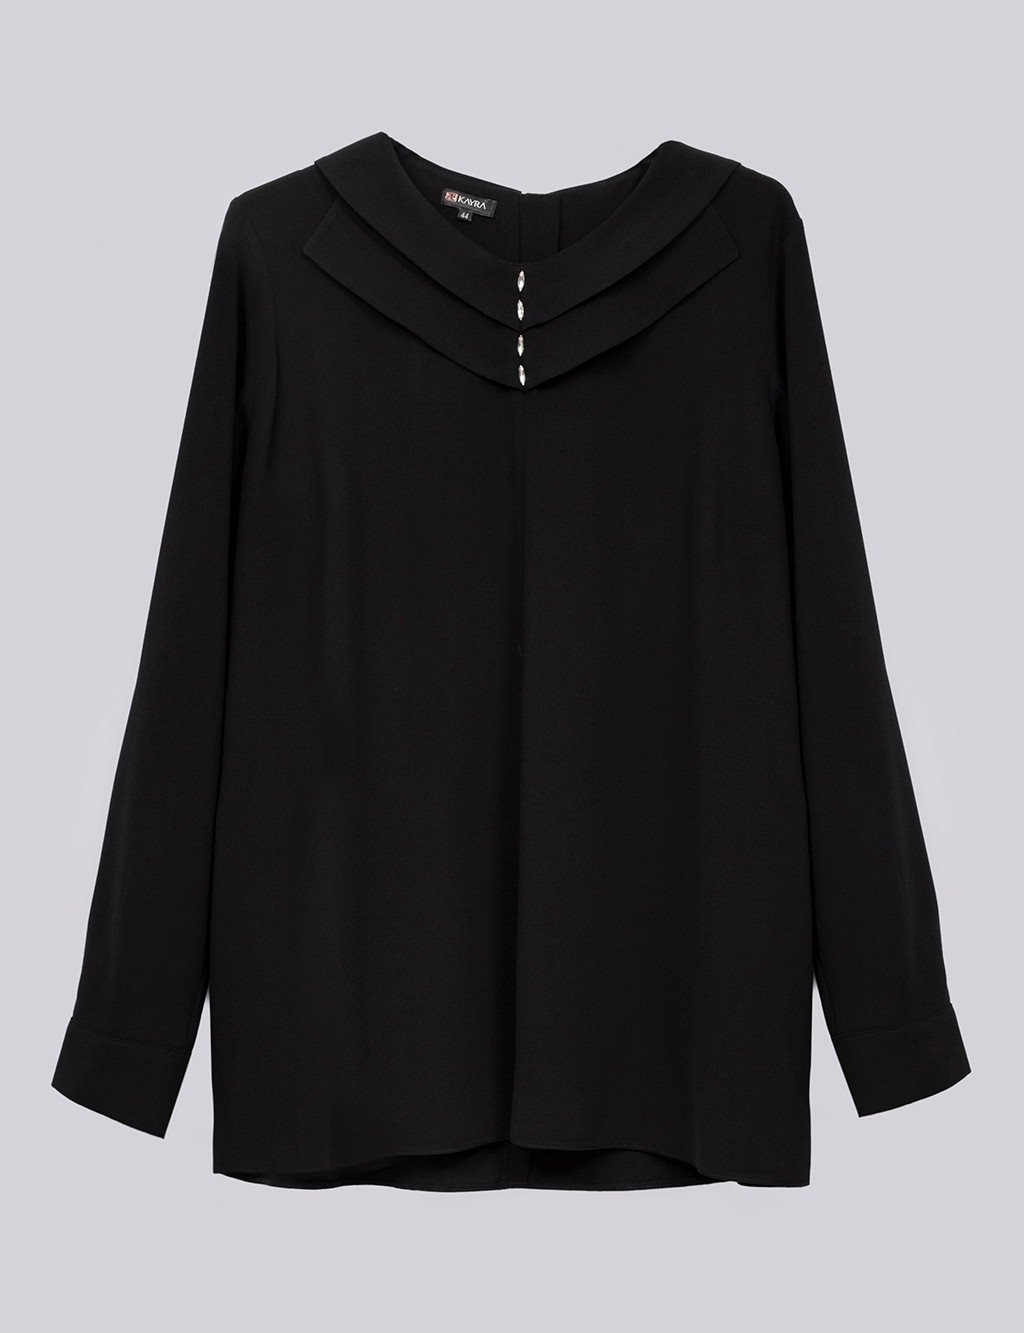 Collar Embellished Blouse Black